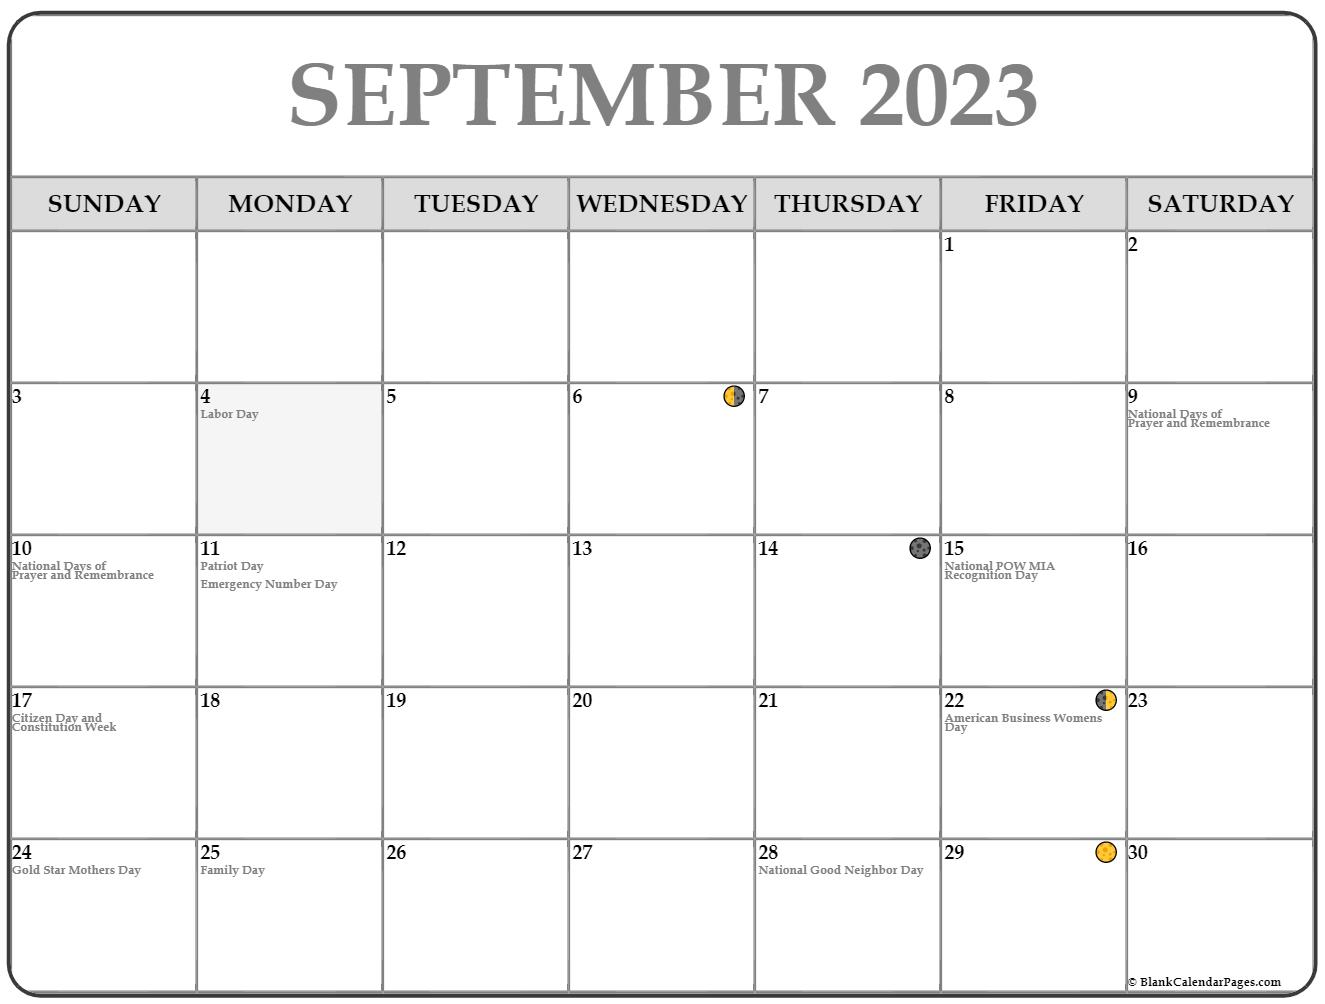 September 2023 Moon Calendar - Get Calender 2023 Update